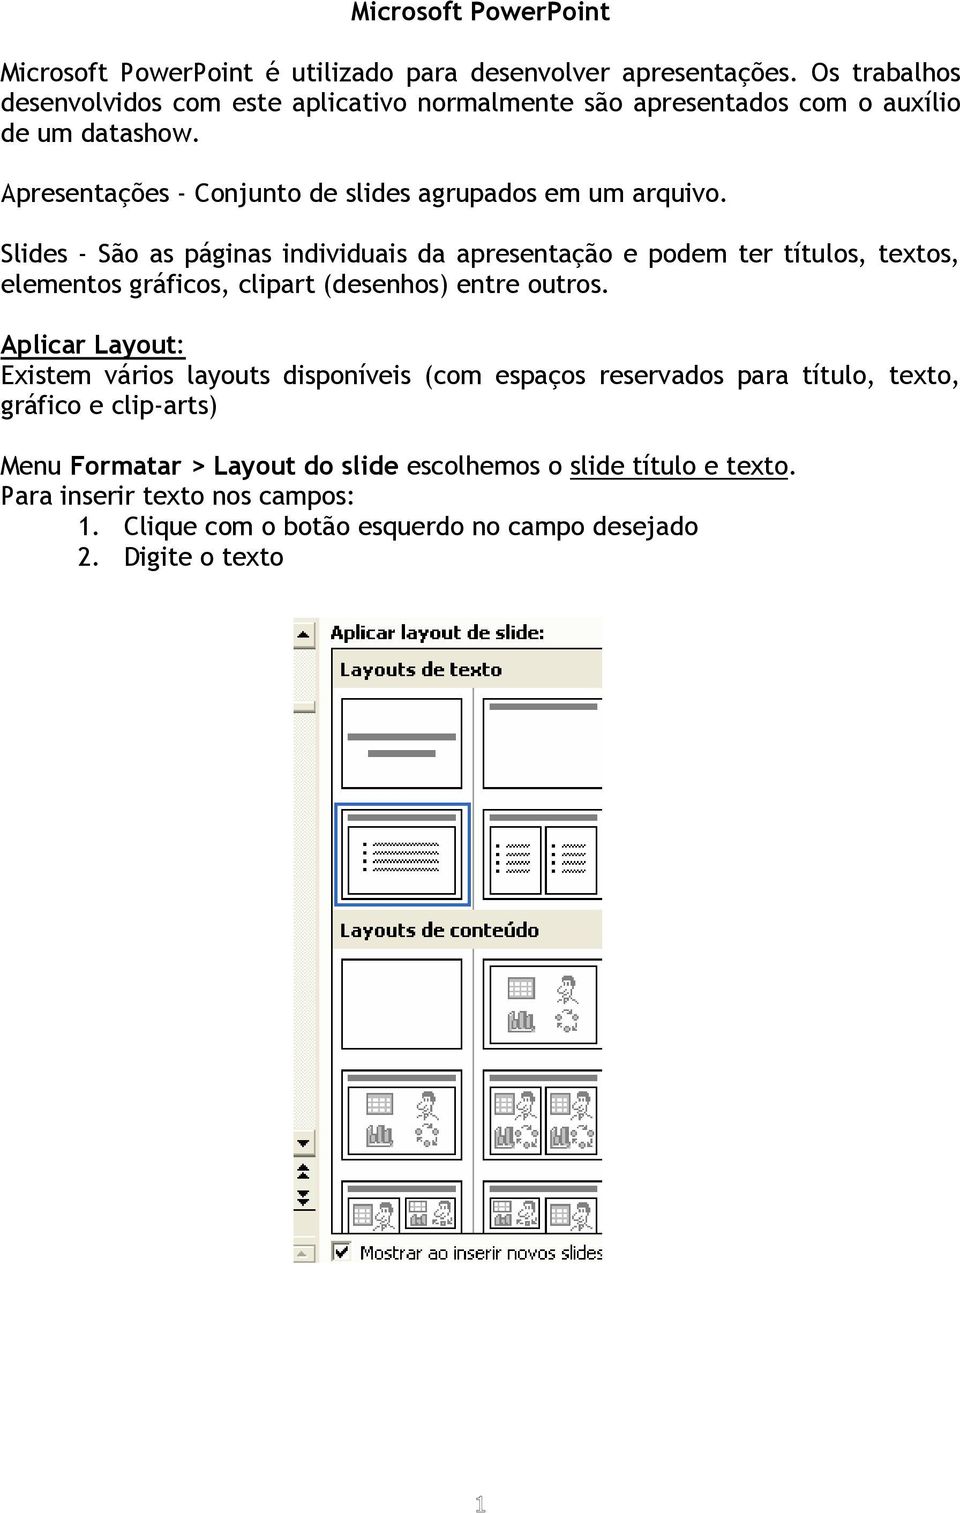 Slides - São as páginas individuais da apresentação e podem ter títulos, textos, elementos gráficos, clipart (desenhos) entre outros.